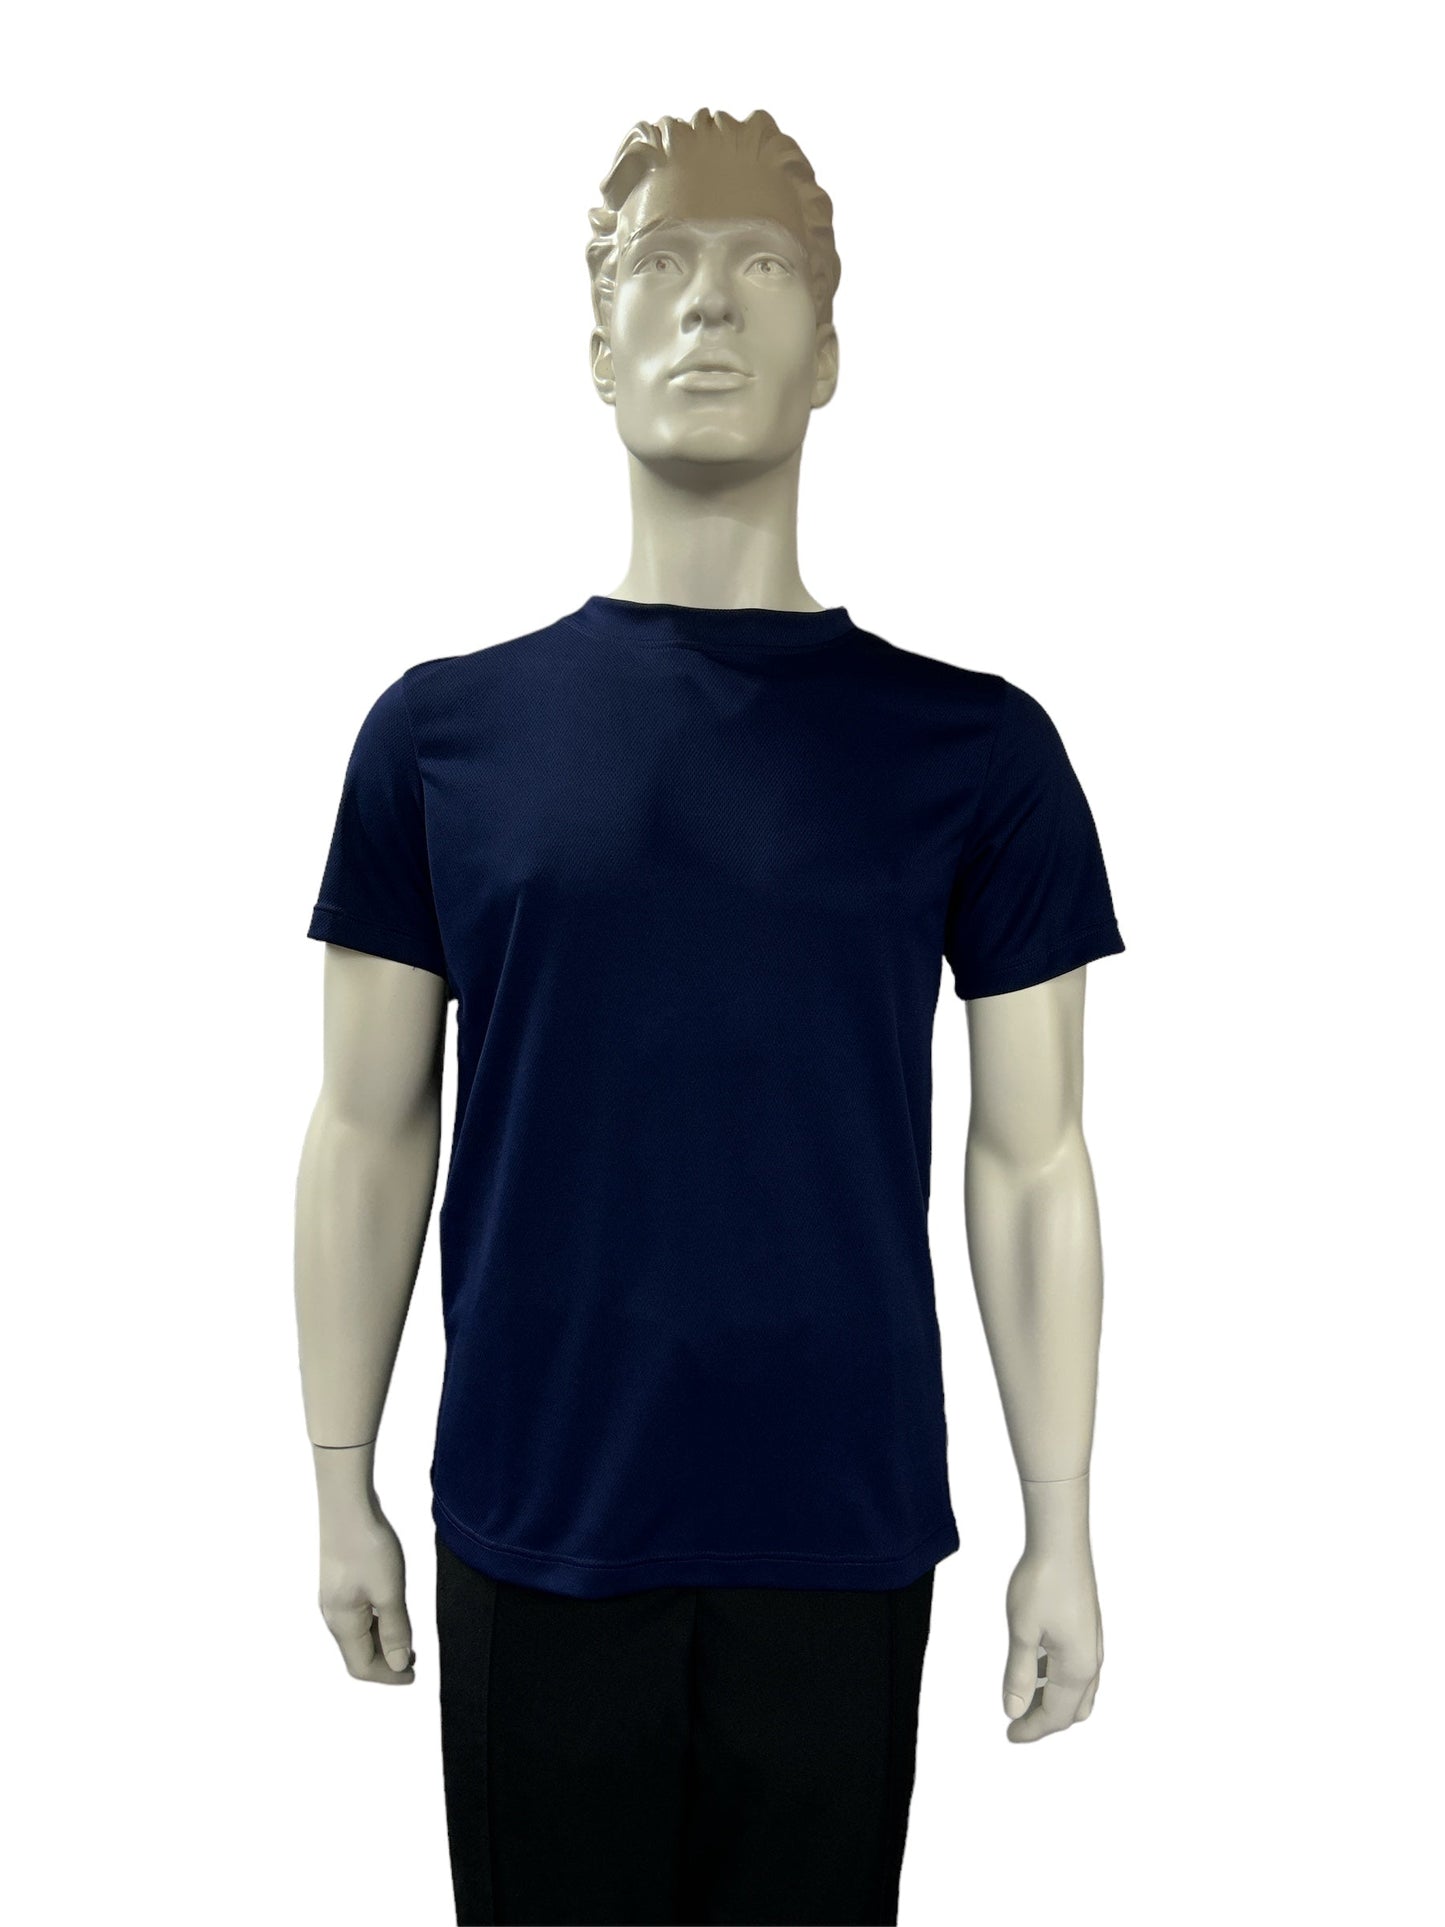 T-shirt bleu nuit | Modèle Marc | Mode Québécoise | A3B